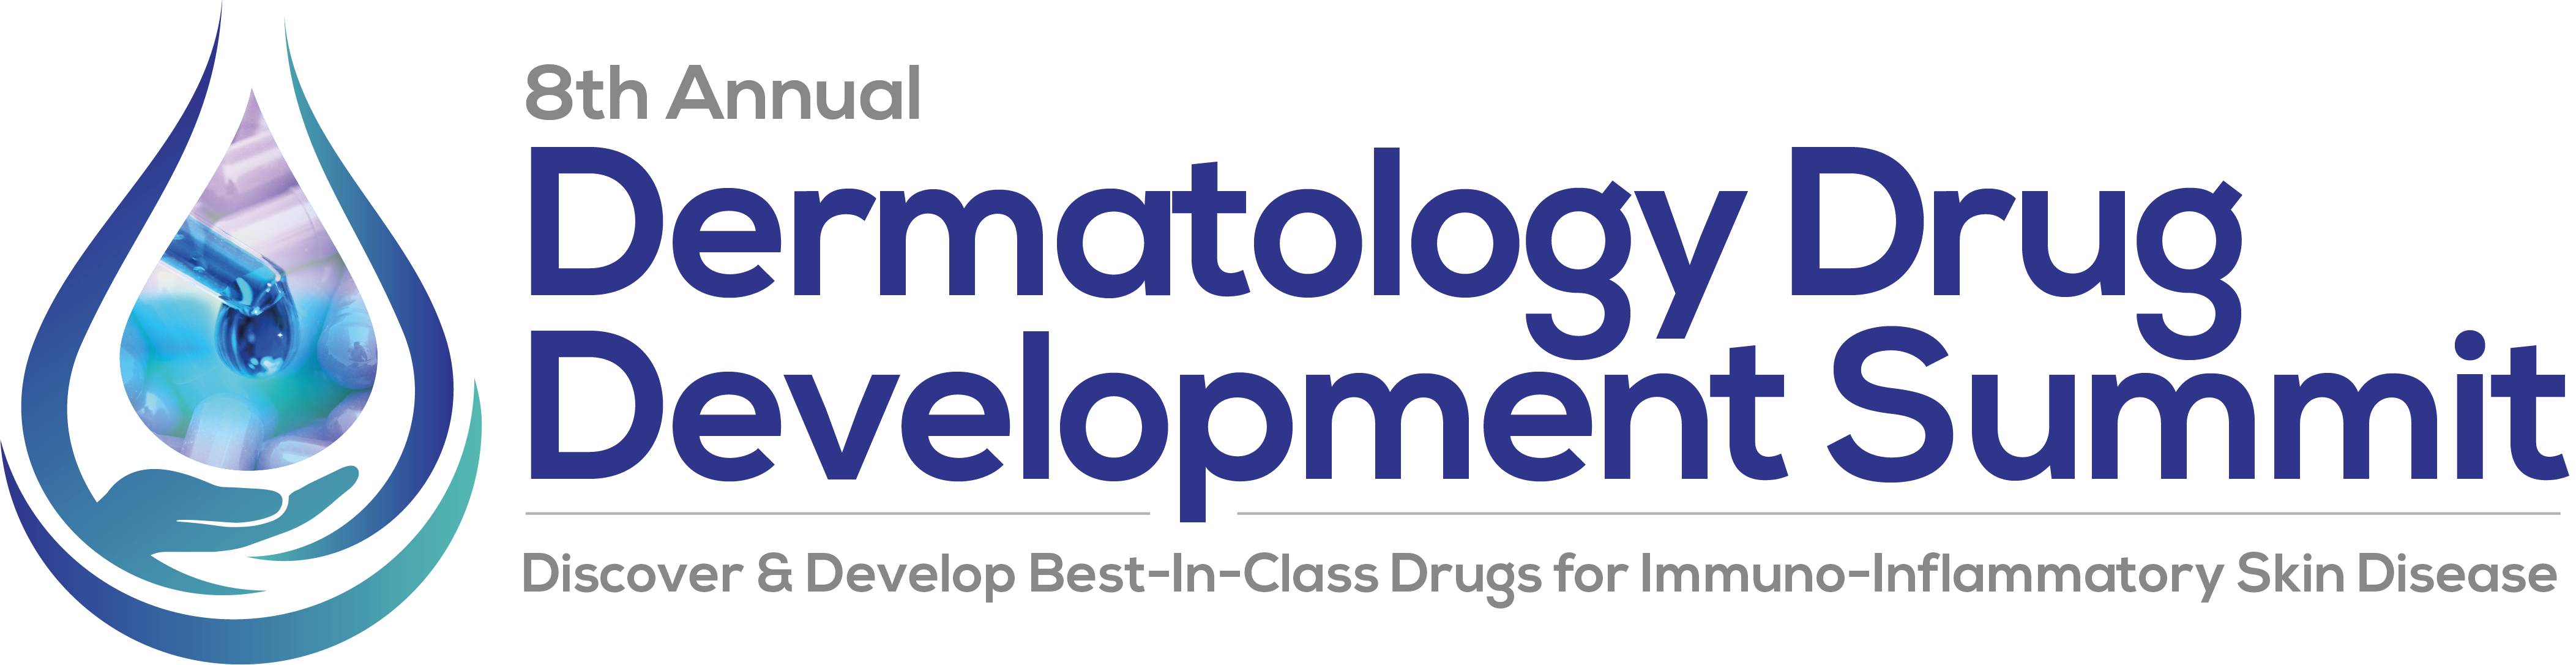 8th Dermatology Drug Development Summit Logo